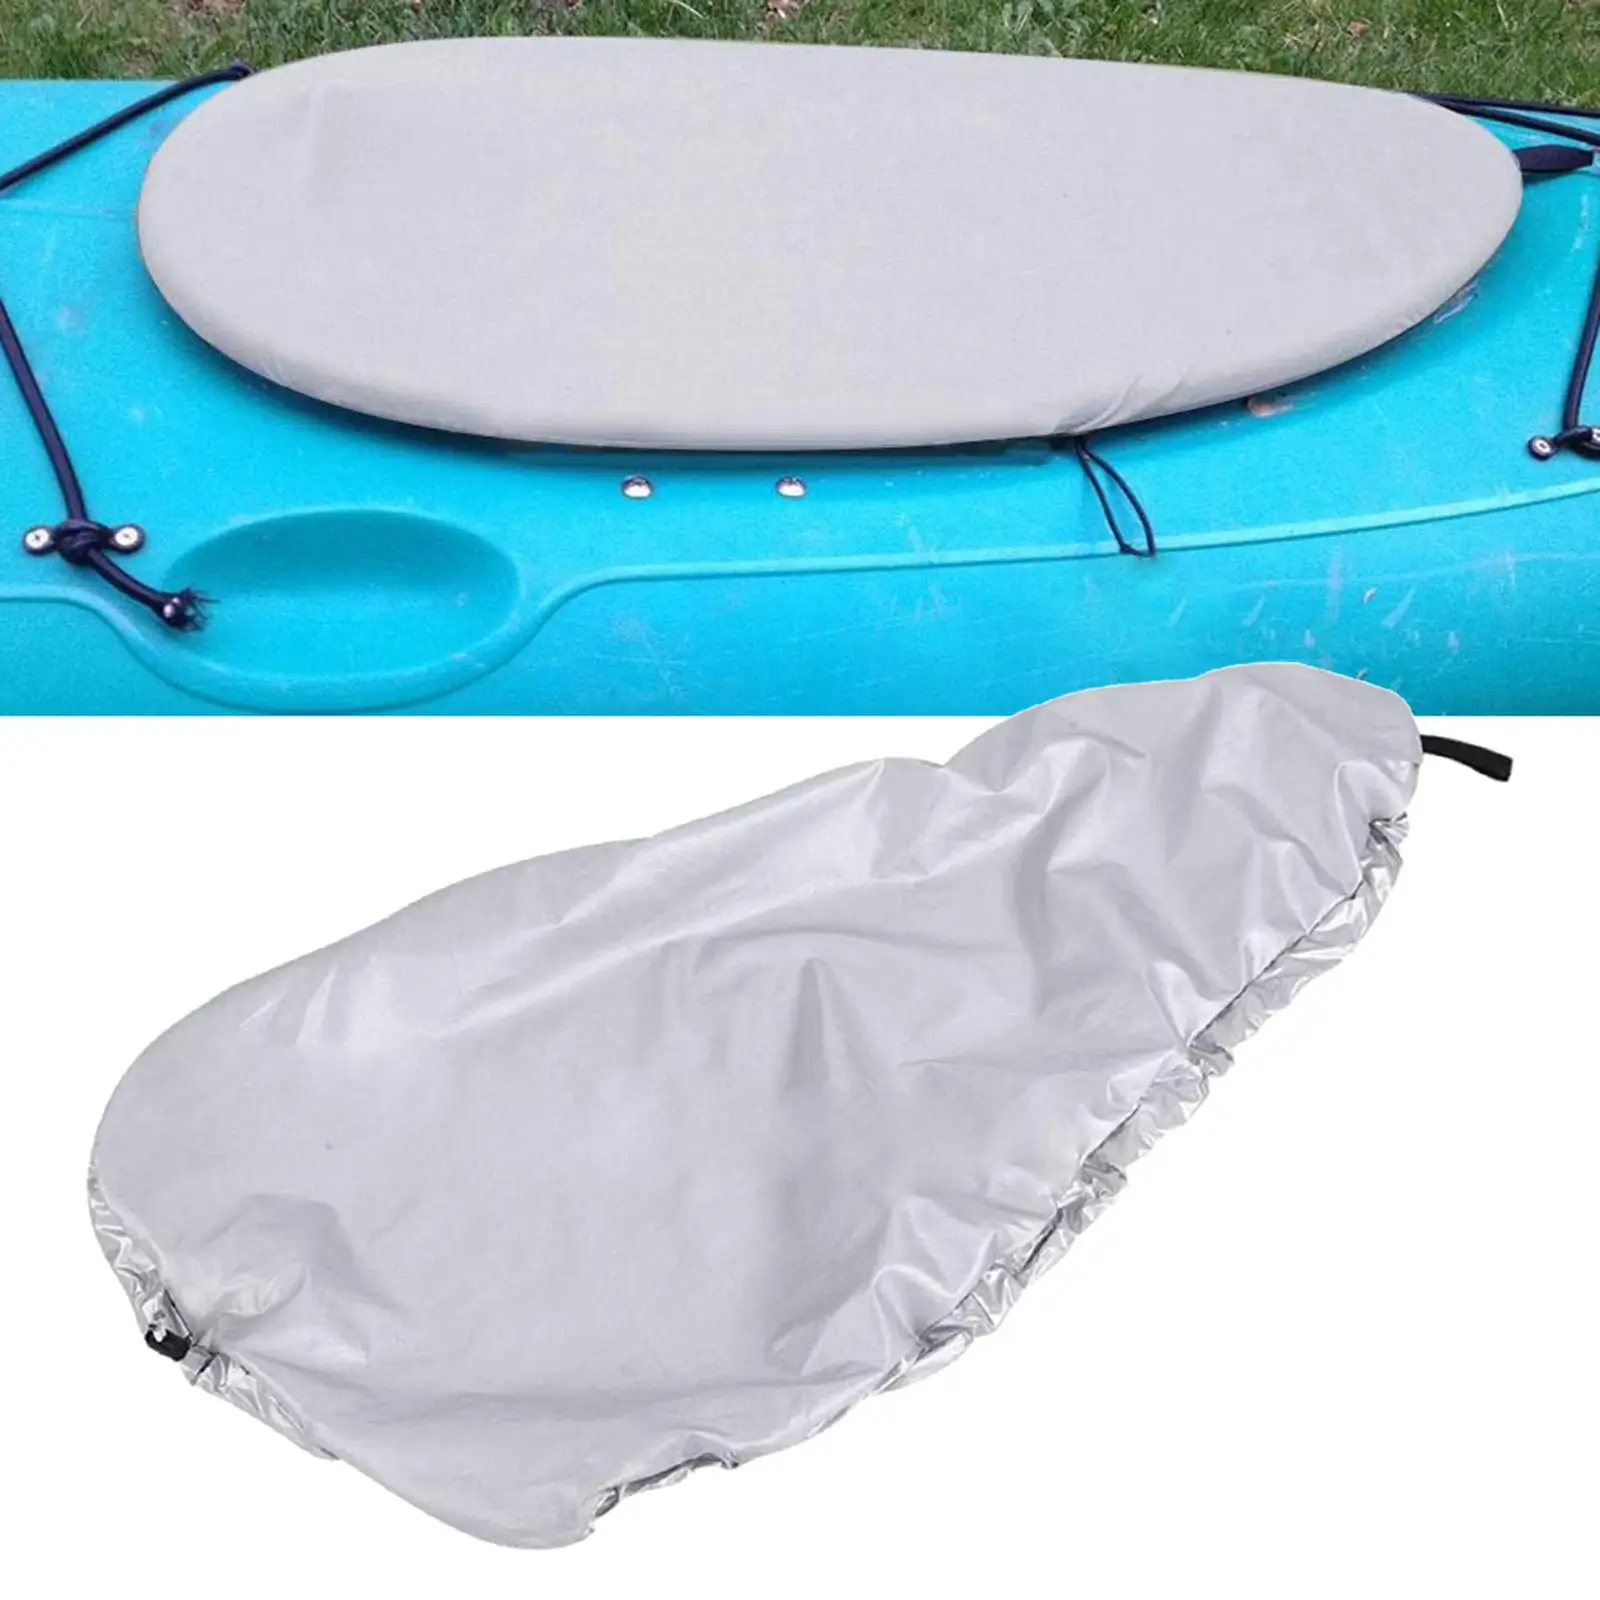 Kayak Cockpit Cover Universal Waterproof Adjustable Storage